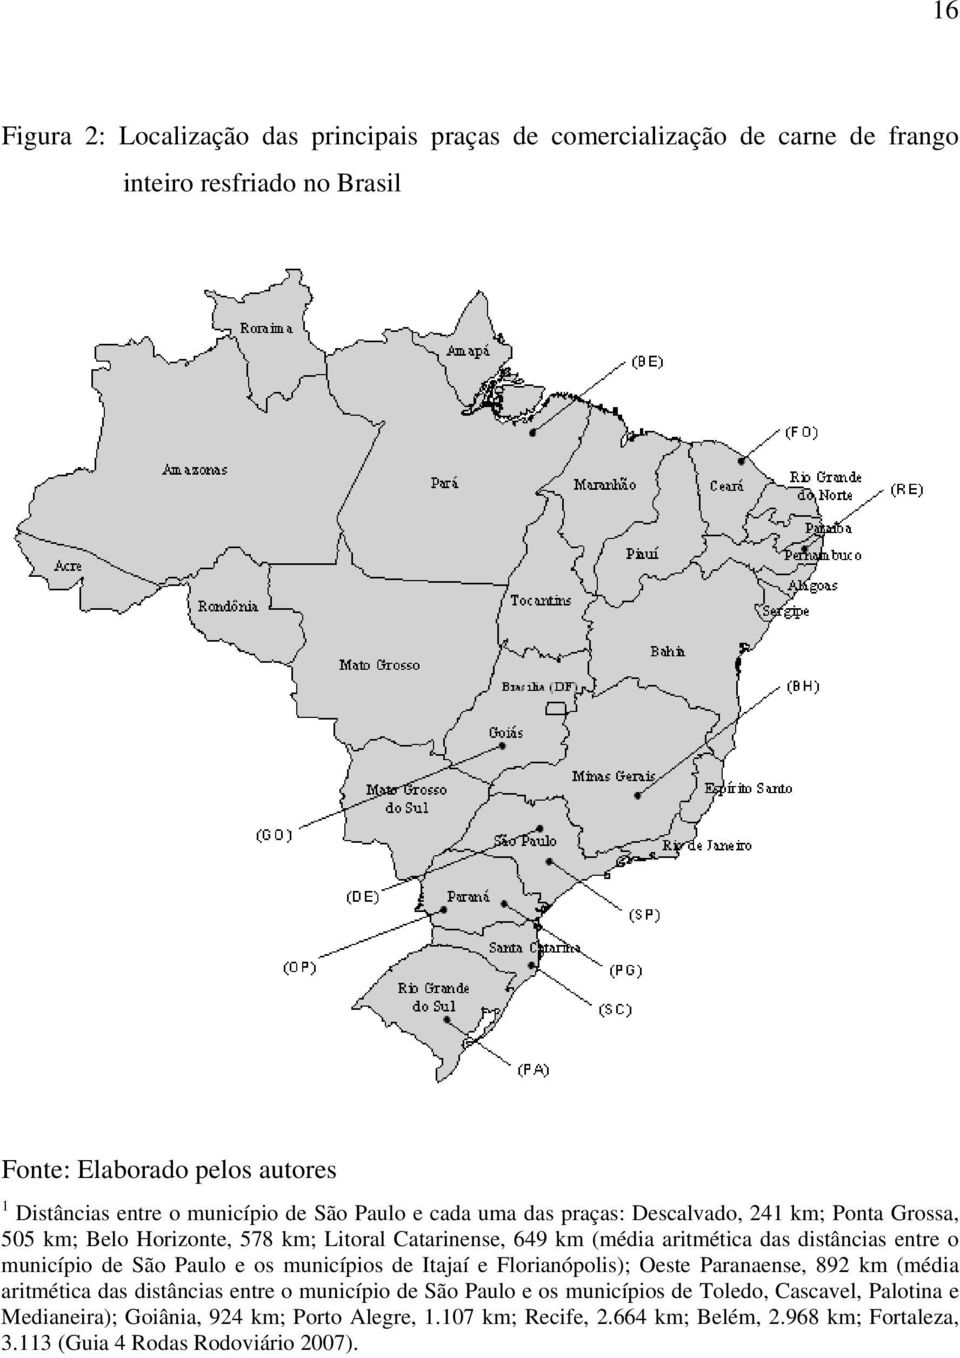 enre o município de São Paulo e os municípios de Iajaí e Florianópolis); Oese Paranaense, 892 km (média ariméica das disâncias enre o município de São Paulo e os